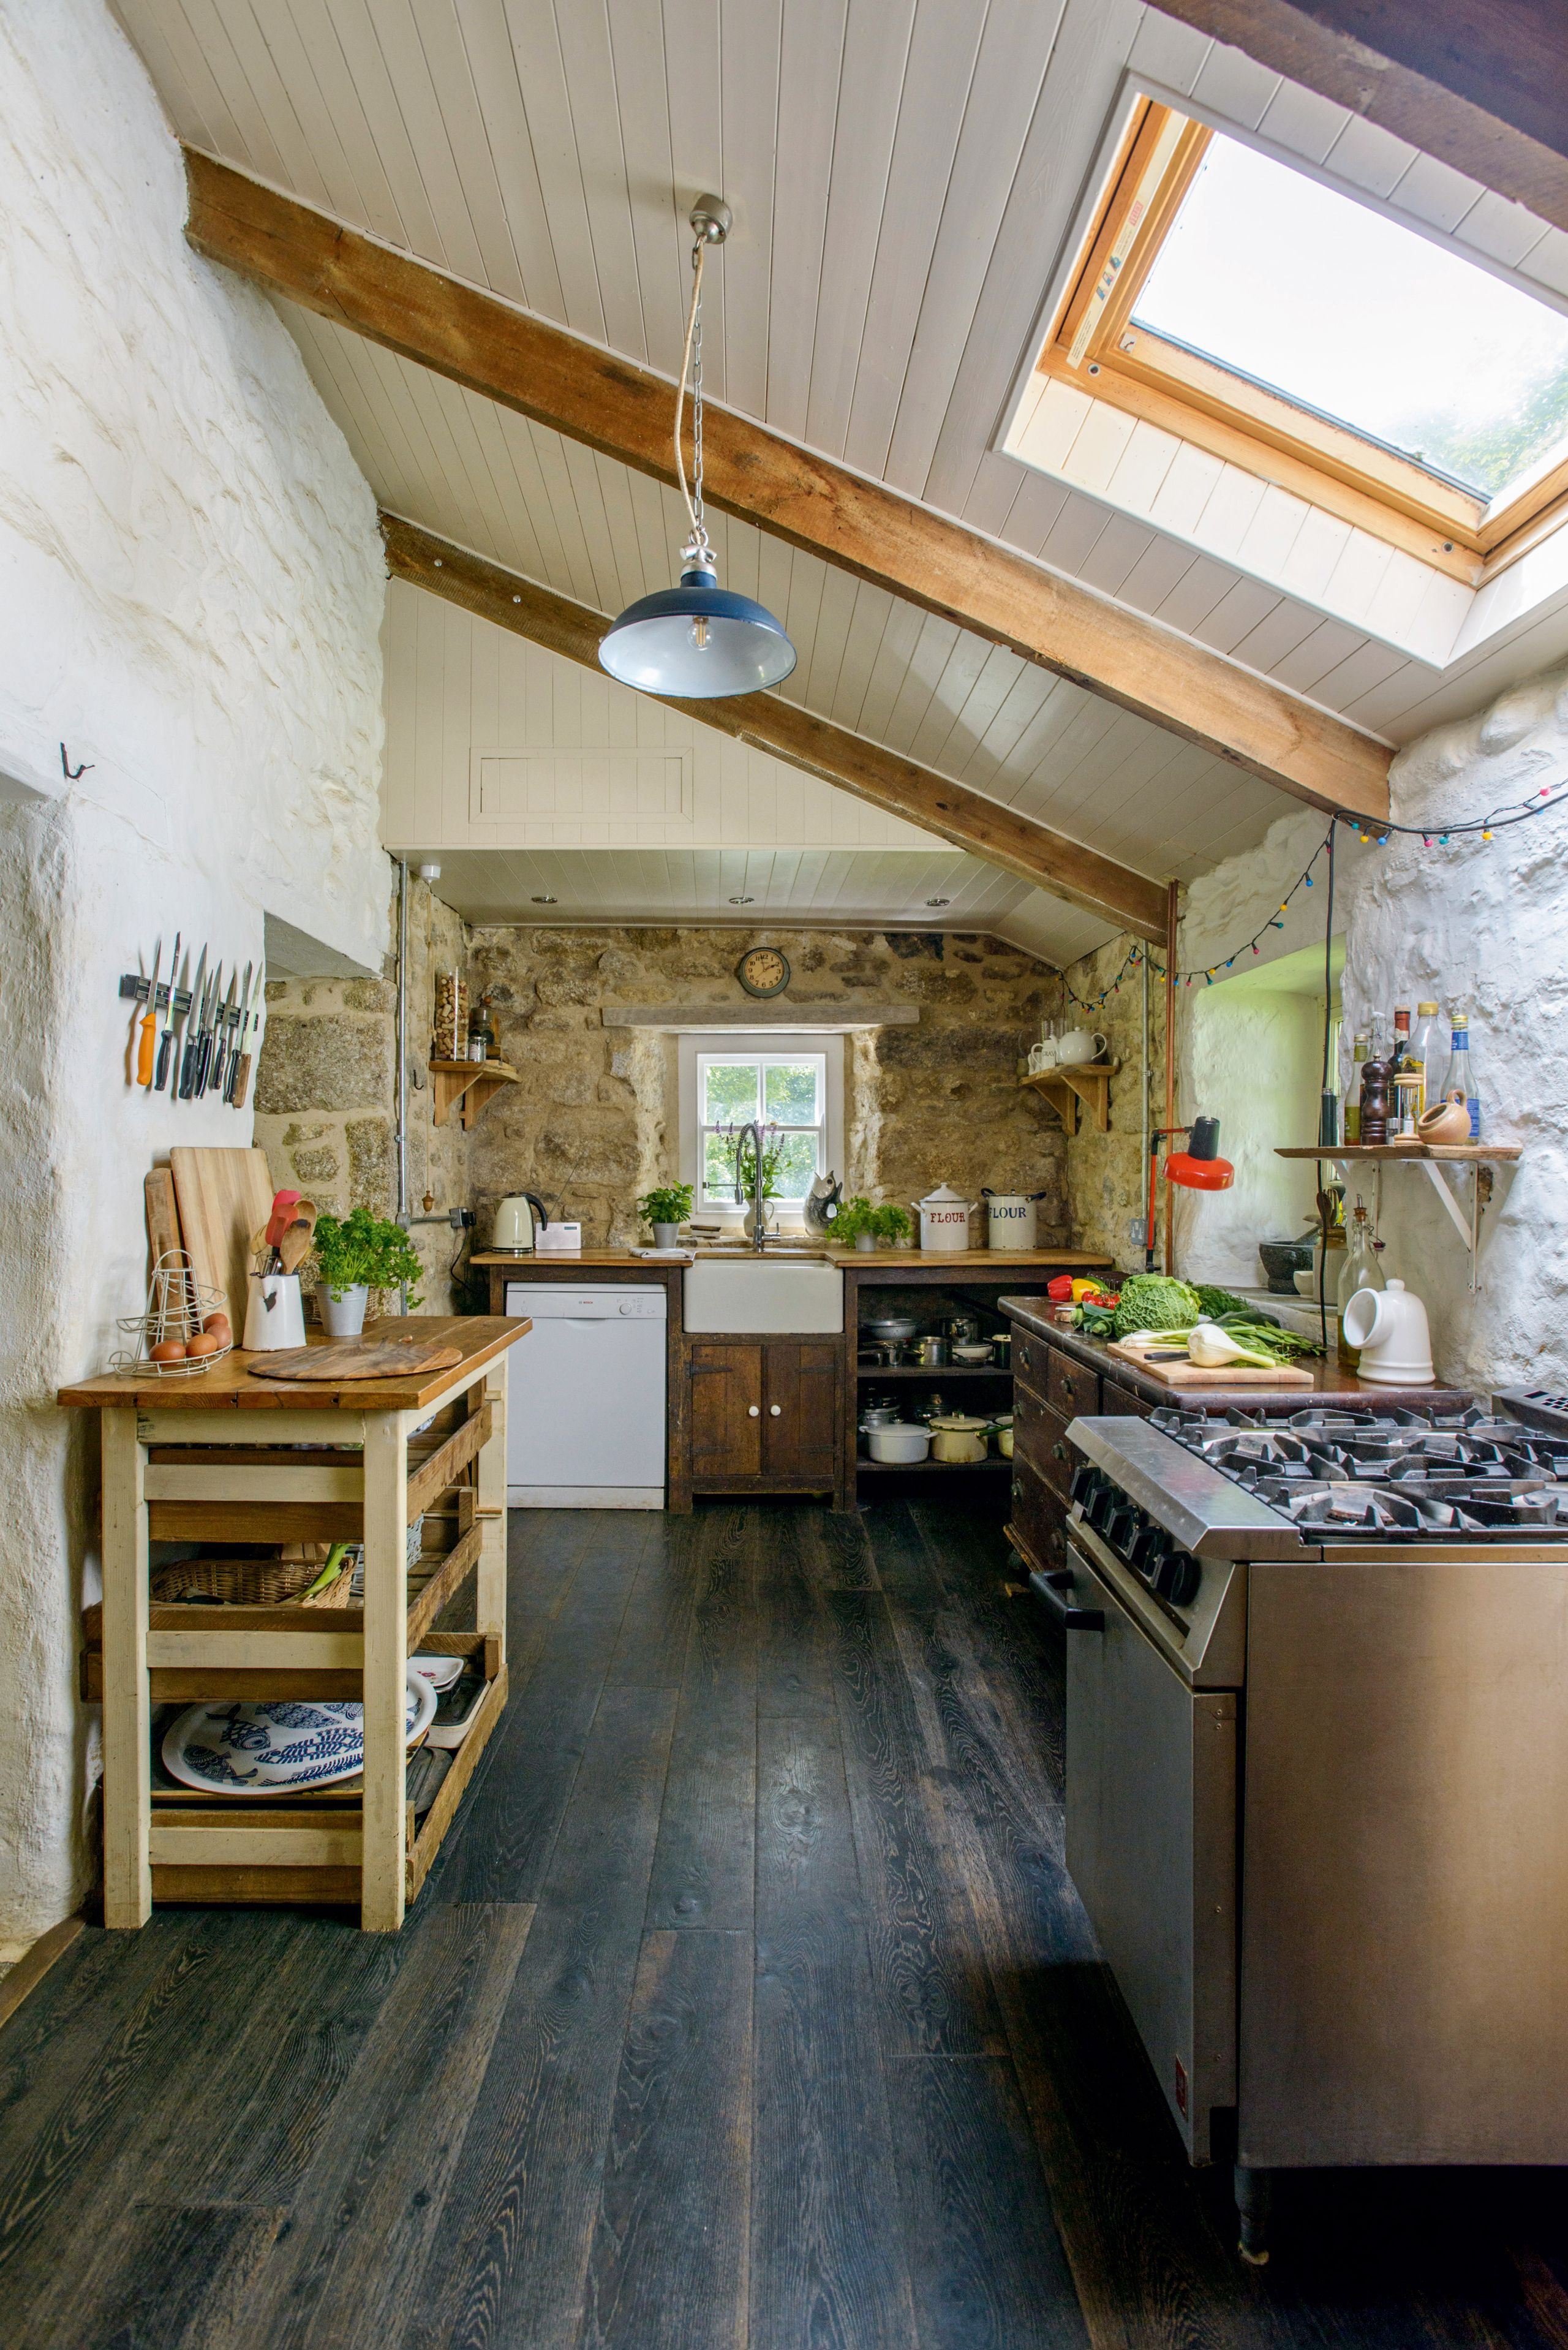 cozinha rústica de pedra com mobiliário freestanding